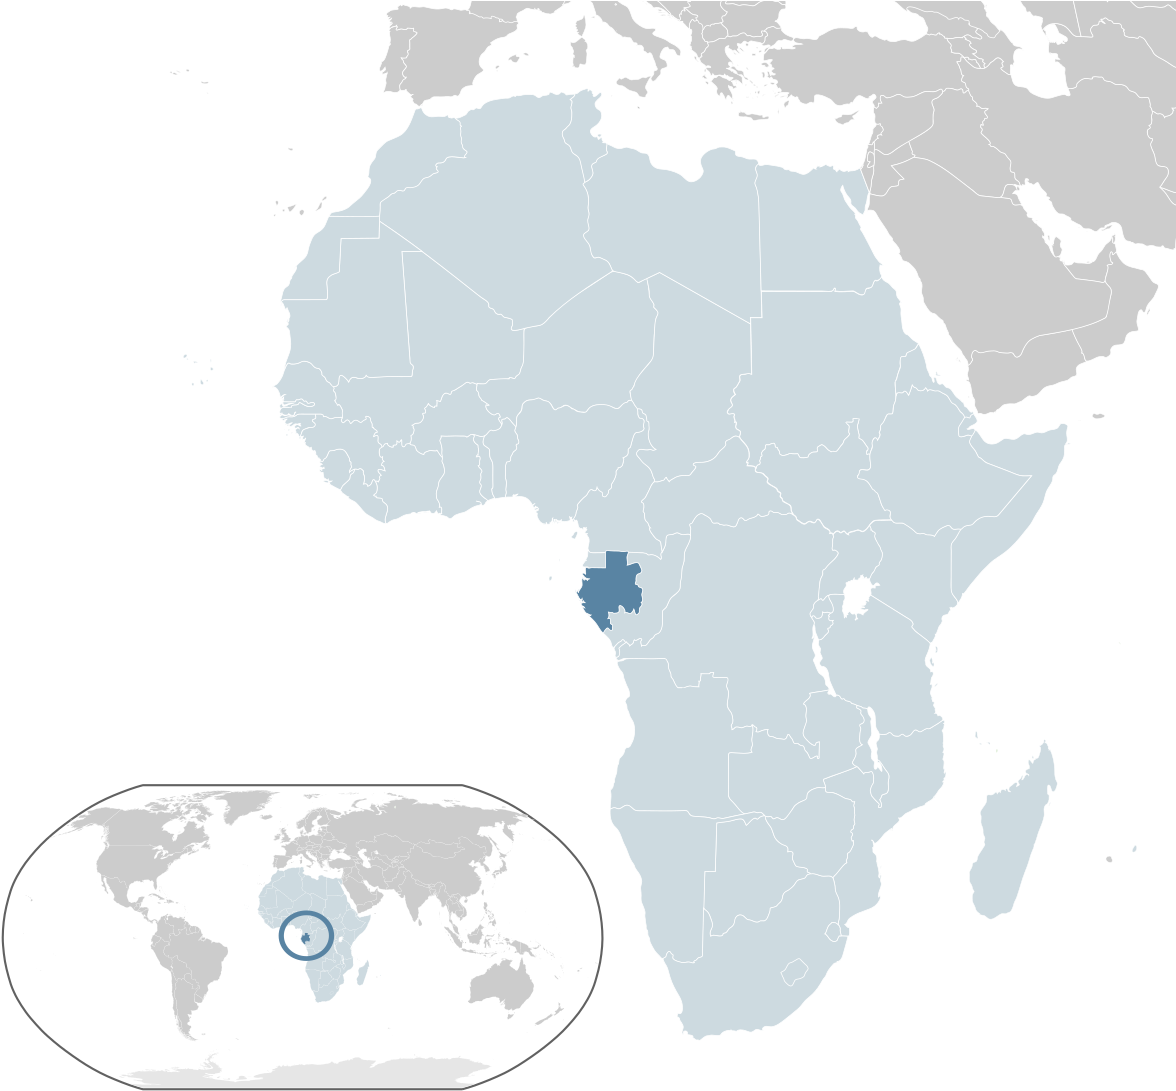 Malawi Locationin Africa Map